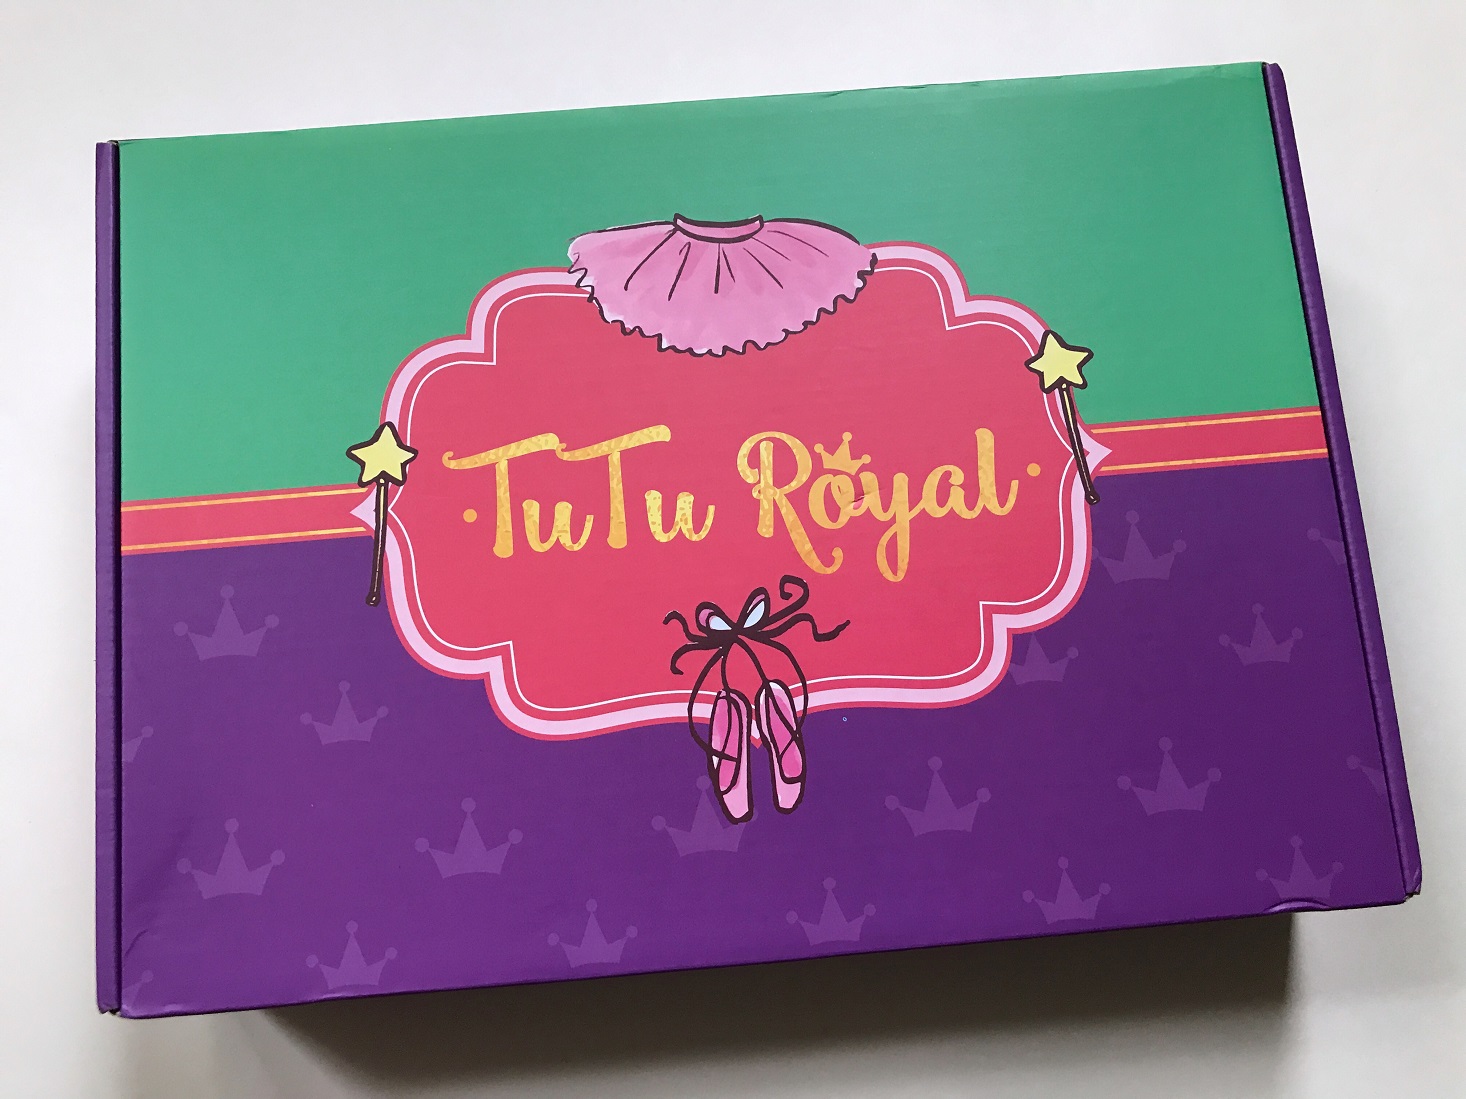 TuTu Royal Subscription Box Review – October 2017